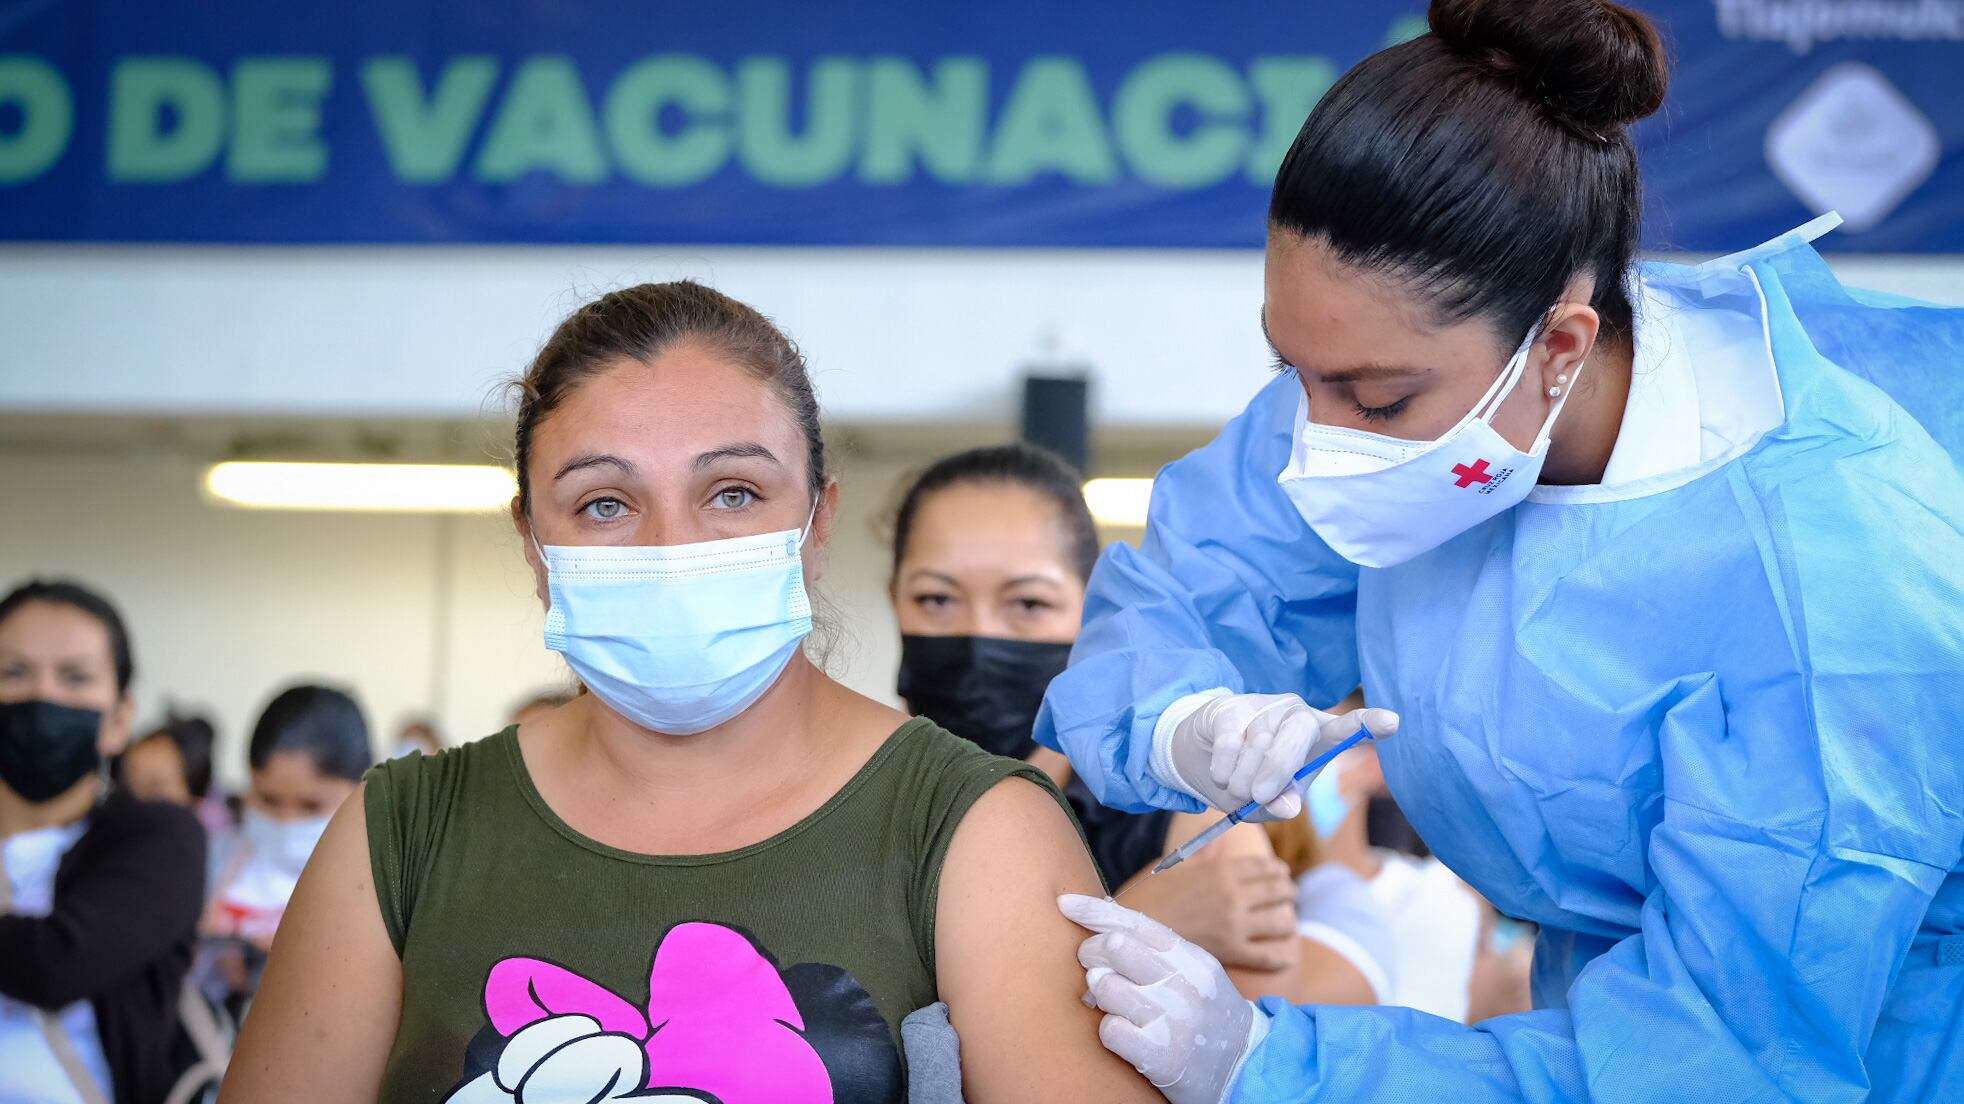 El gobernador del Estado señaló que hay una desaceleración en el número de hospitalizaciones y contagios; insistió en impulsar las campañas de vacunación.